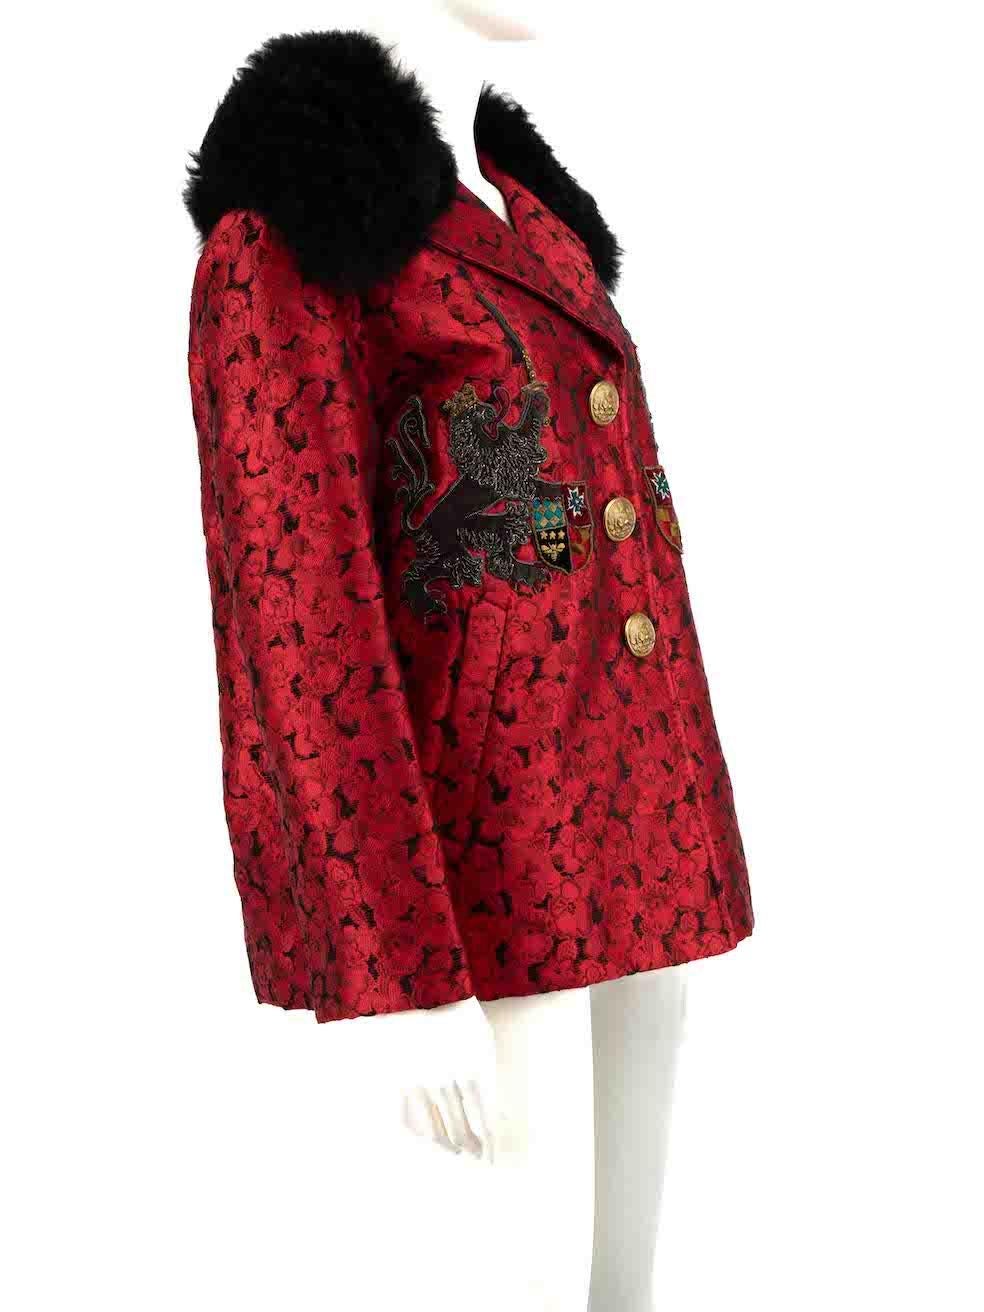 CONDIT ist sehr gut. Kaum sichtbare Abnutzungserscheinungen an der Jacke sind bei diesem gebrauchten Dolce & Gabbana Designer-Wiederverkaufsartikel zu erkennen.
 
 Einzelheiten
 Rot
 Viskose
 Übergroße Jacke
 Mittlere Länge
 Florales